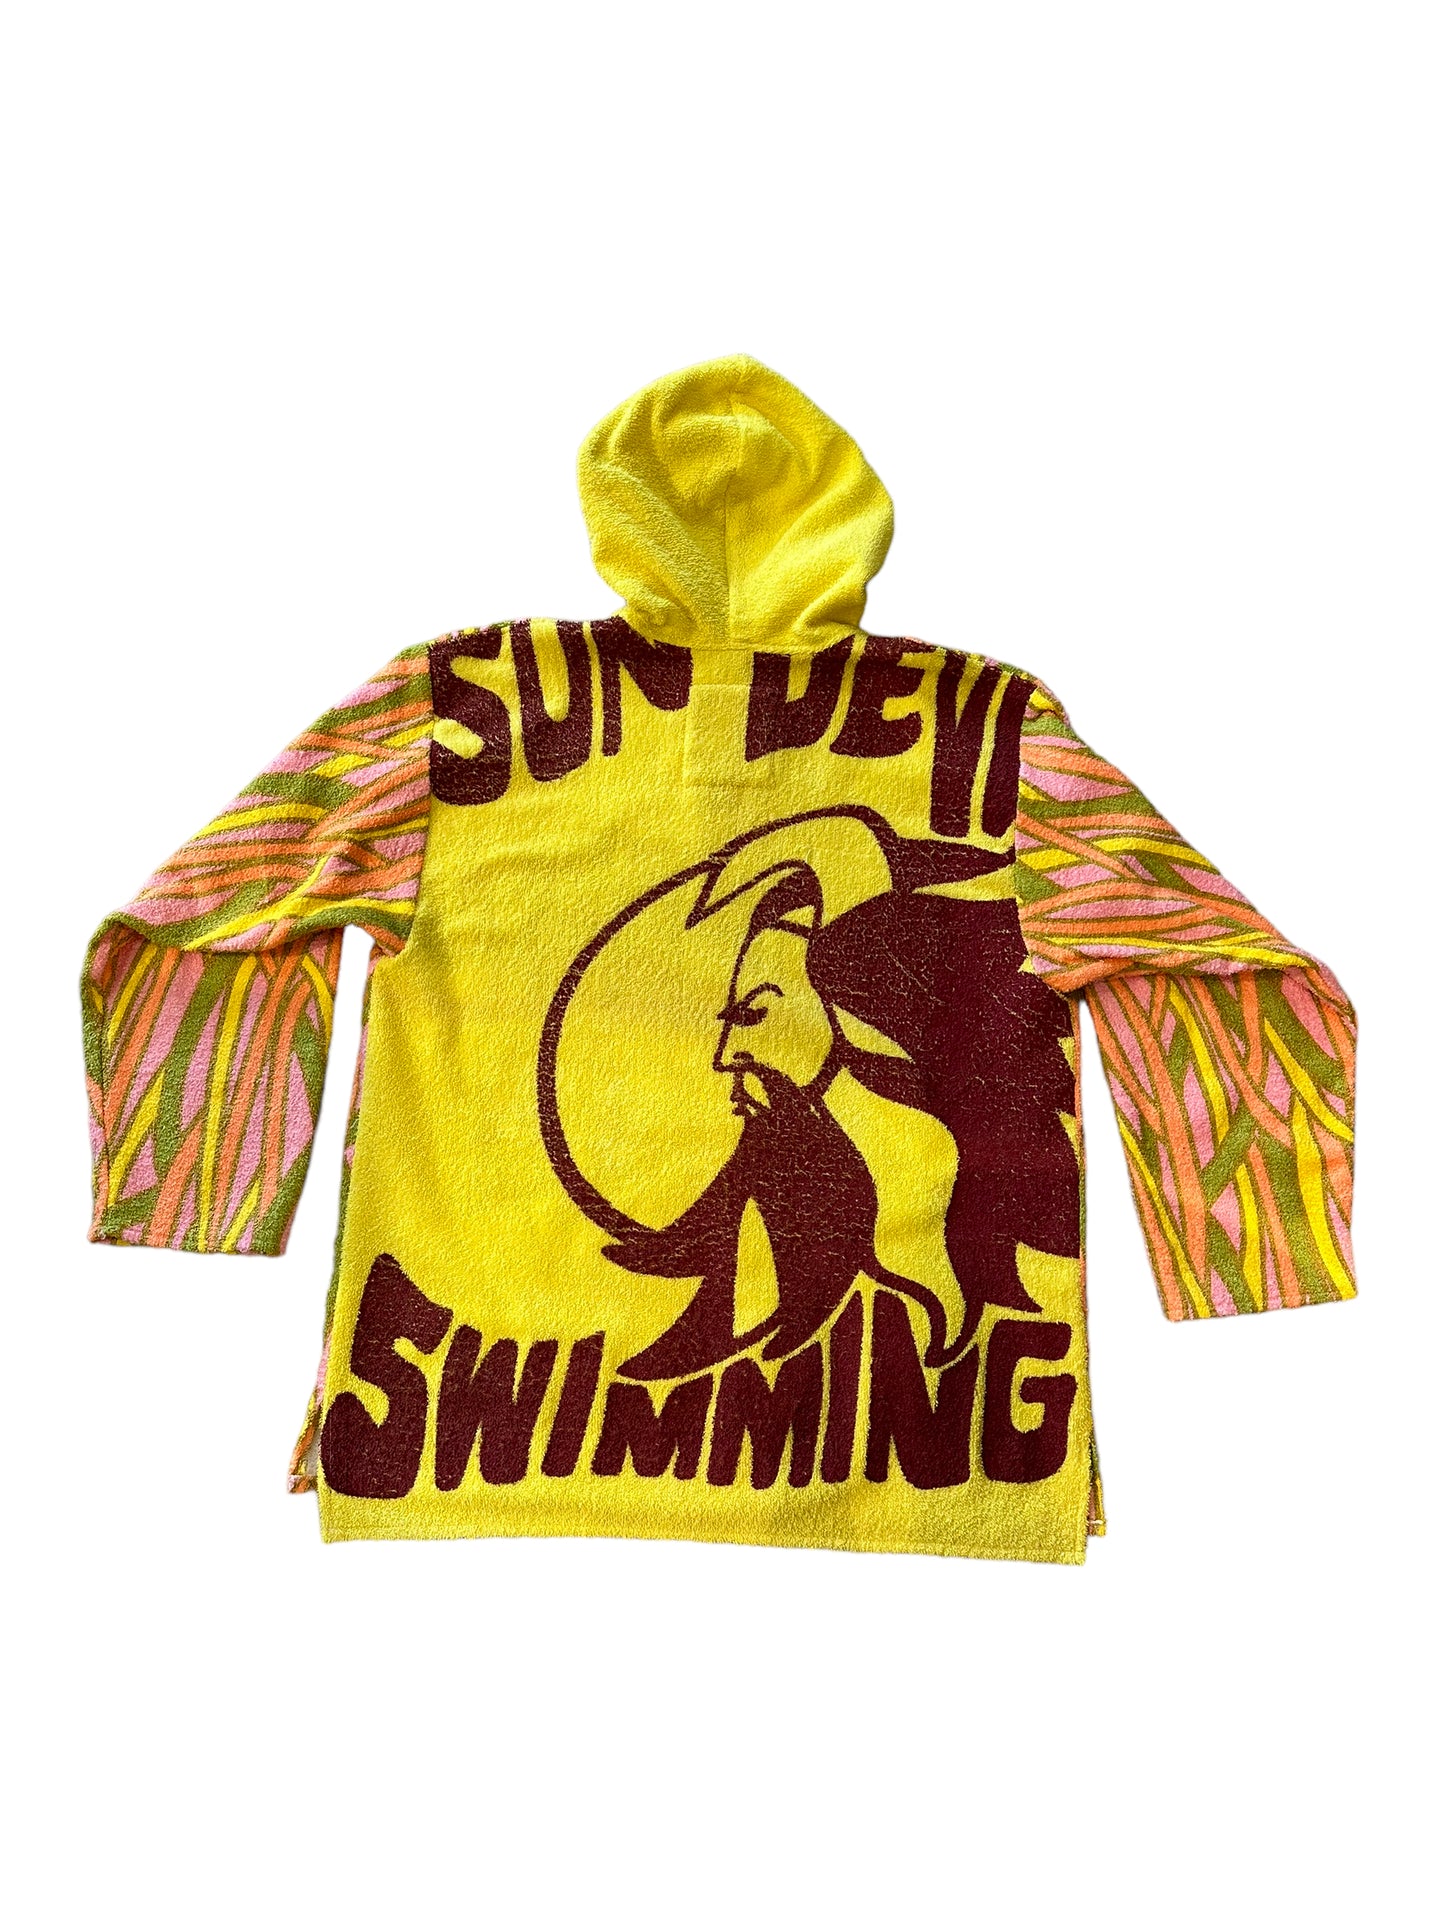 Baja in Sun Devil Swimming